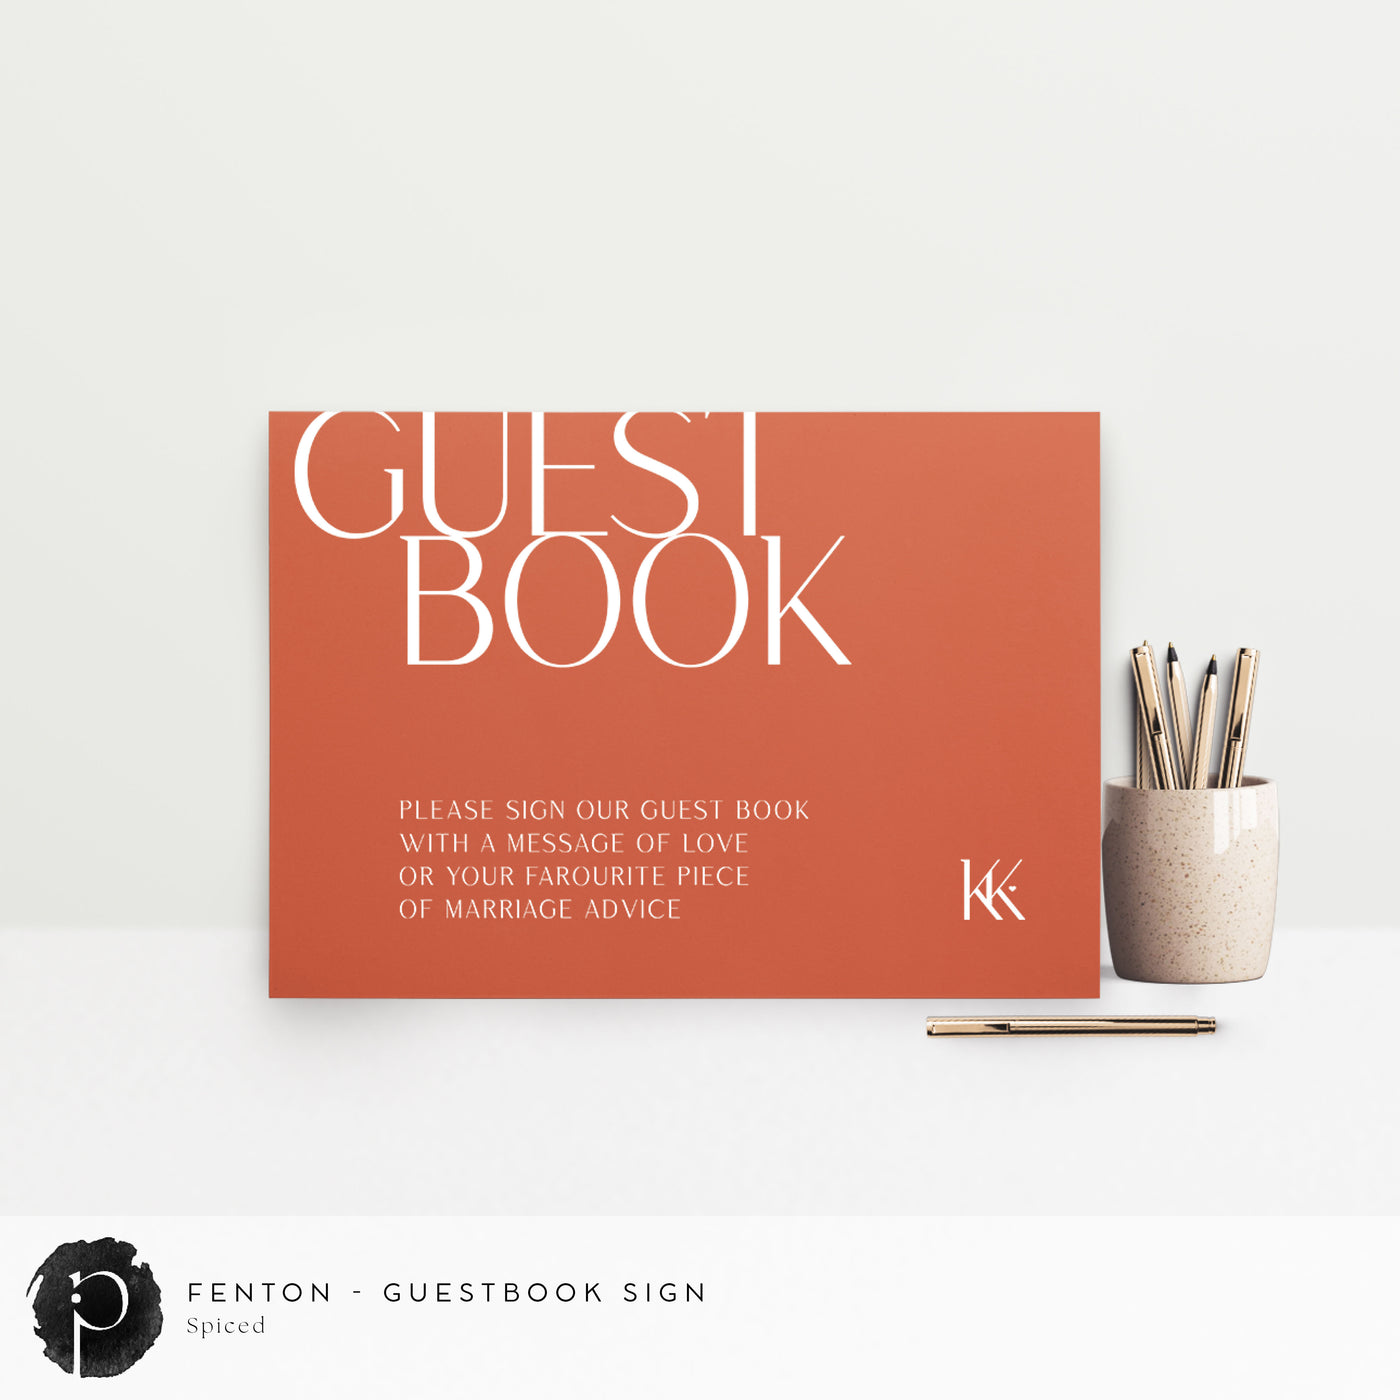 Fenton - Guestbook Sign